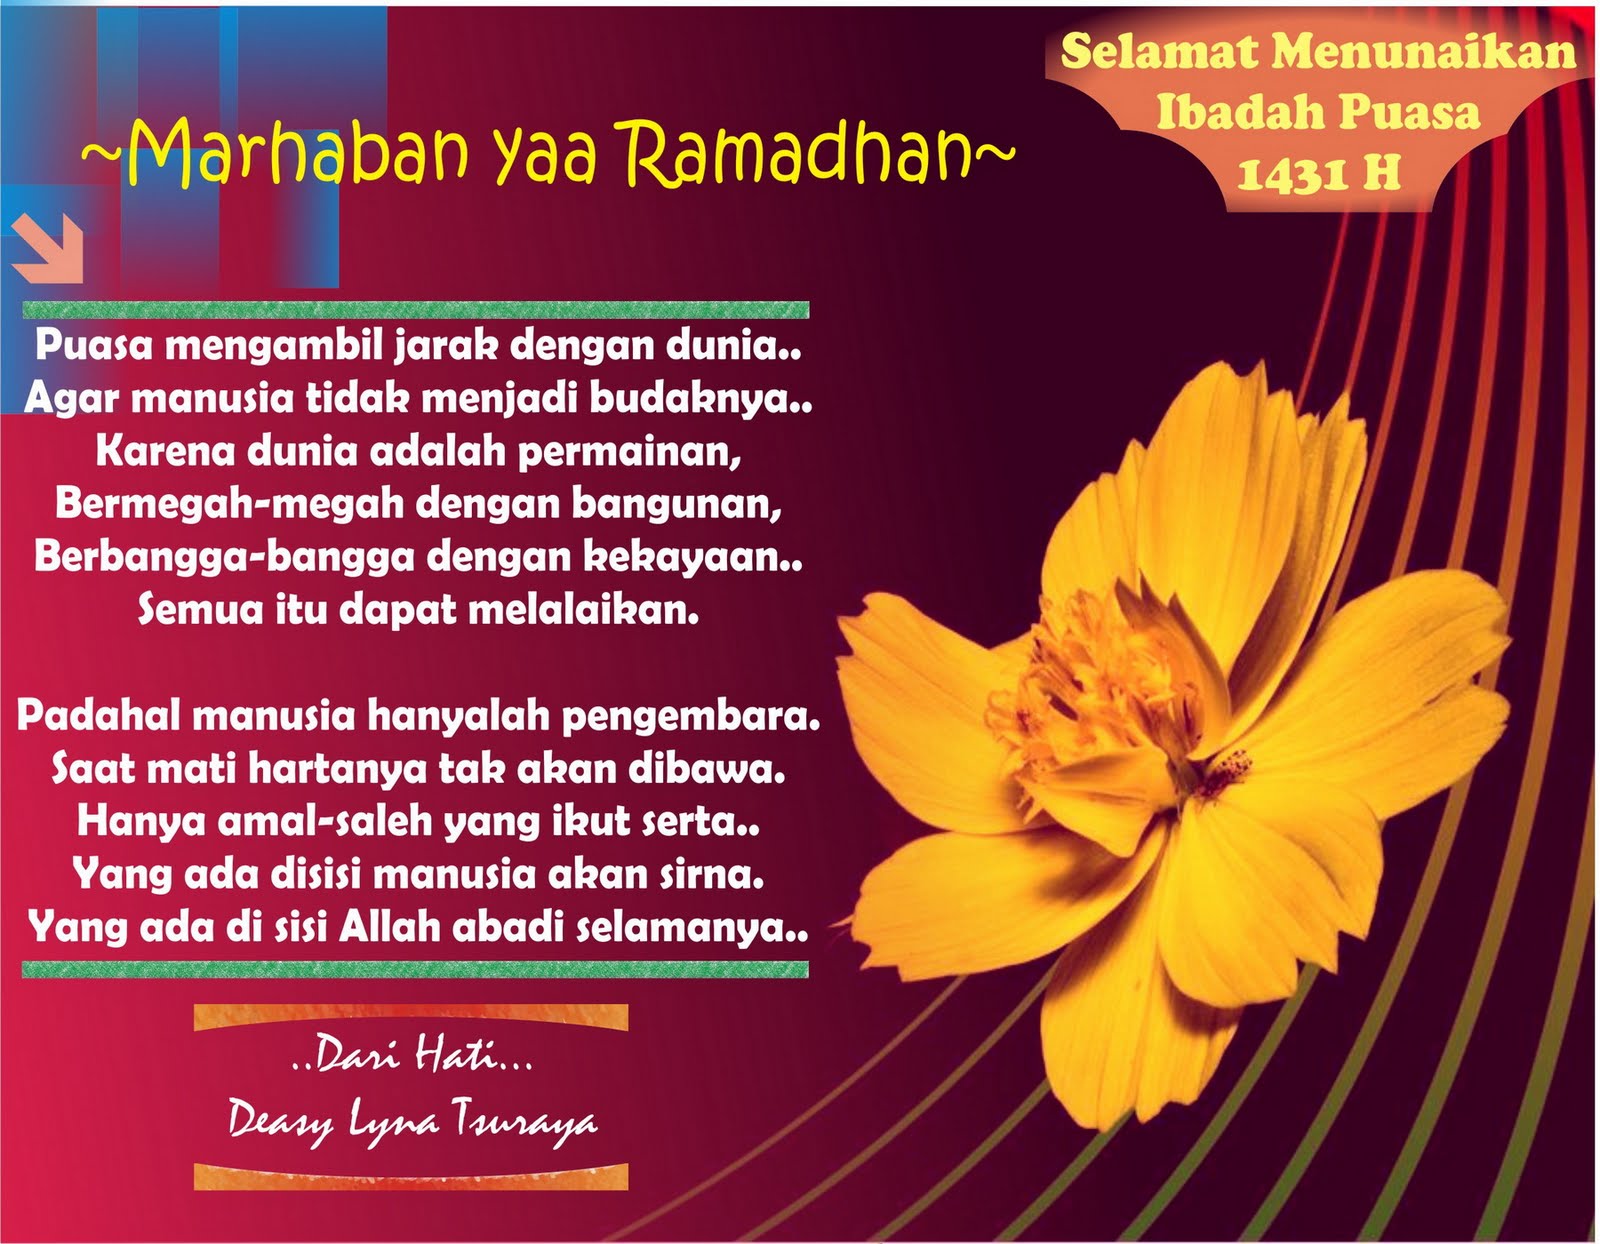 FORKARISMA Marhaban Ya Ramadhan